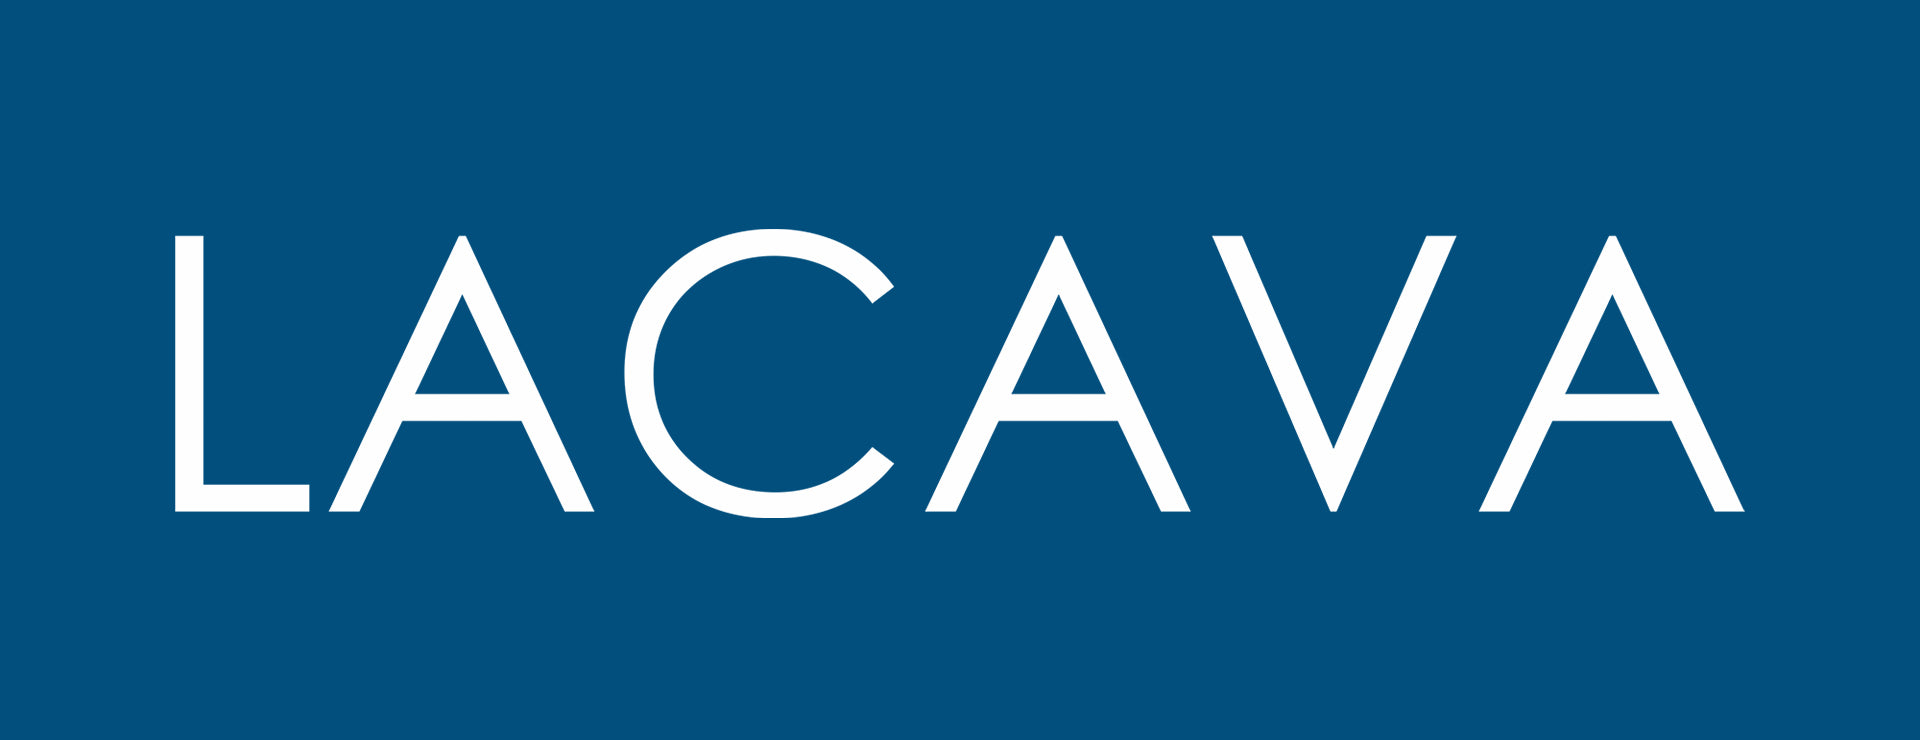 Lacava-Logo.jpg__PID:18f03b5a-9f3d-46f5-820d-f2a7ae845fd1